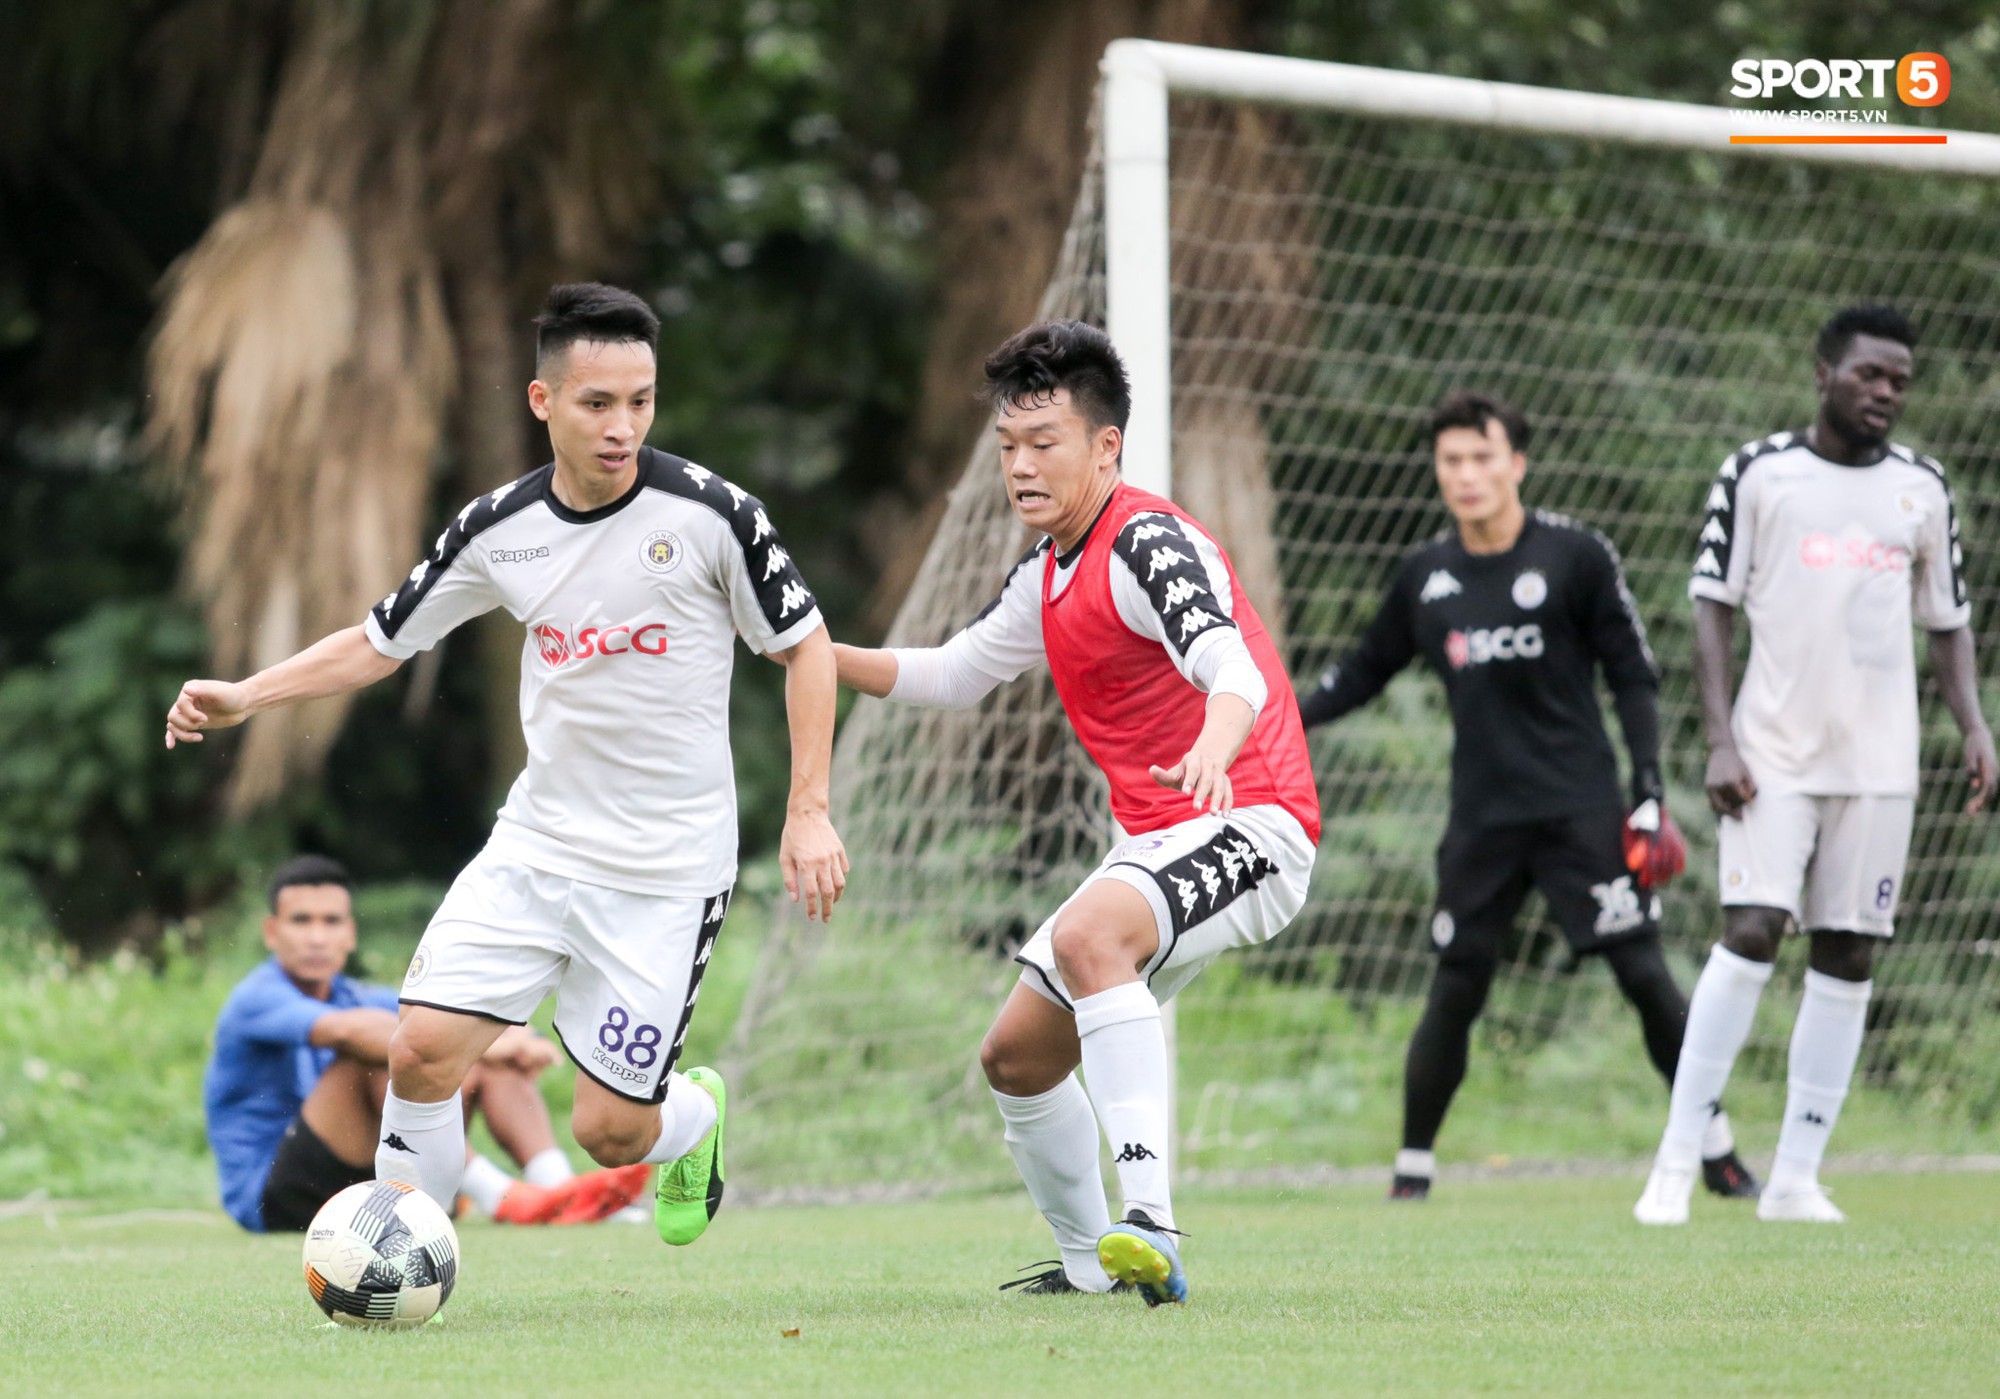 Quang Hải bấm bóng, ghi bàn đẳng cấp vào lưới Tiến Dũng trong buổi tập của Hà Nội FC - Ảnh 11.